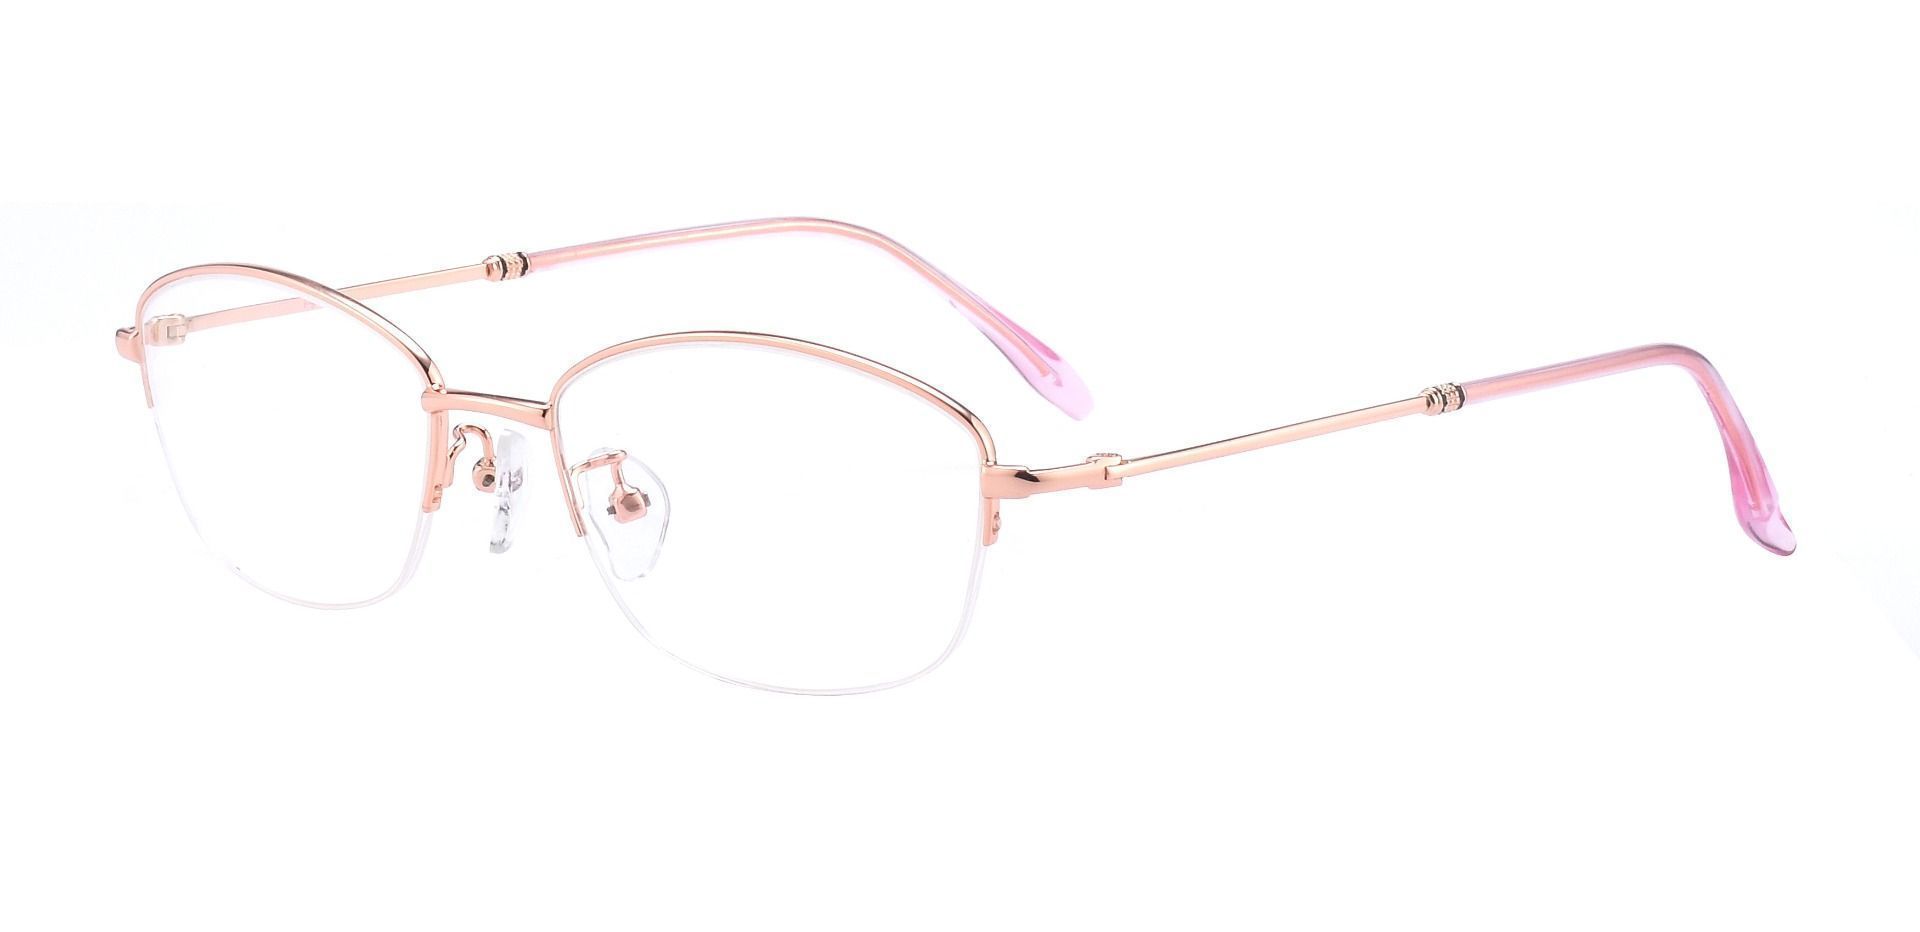 Mendoza Oval Non-Rx Glasses - Rose Gold